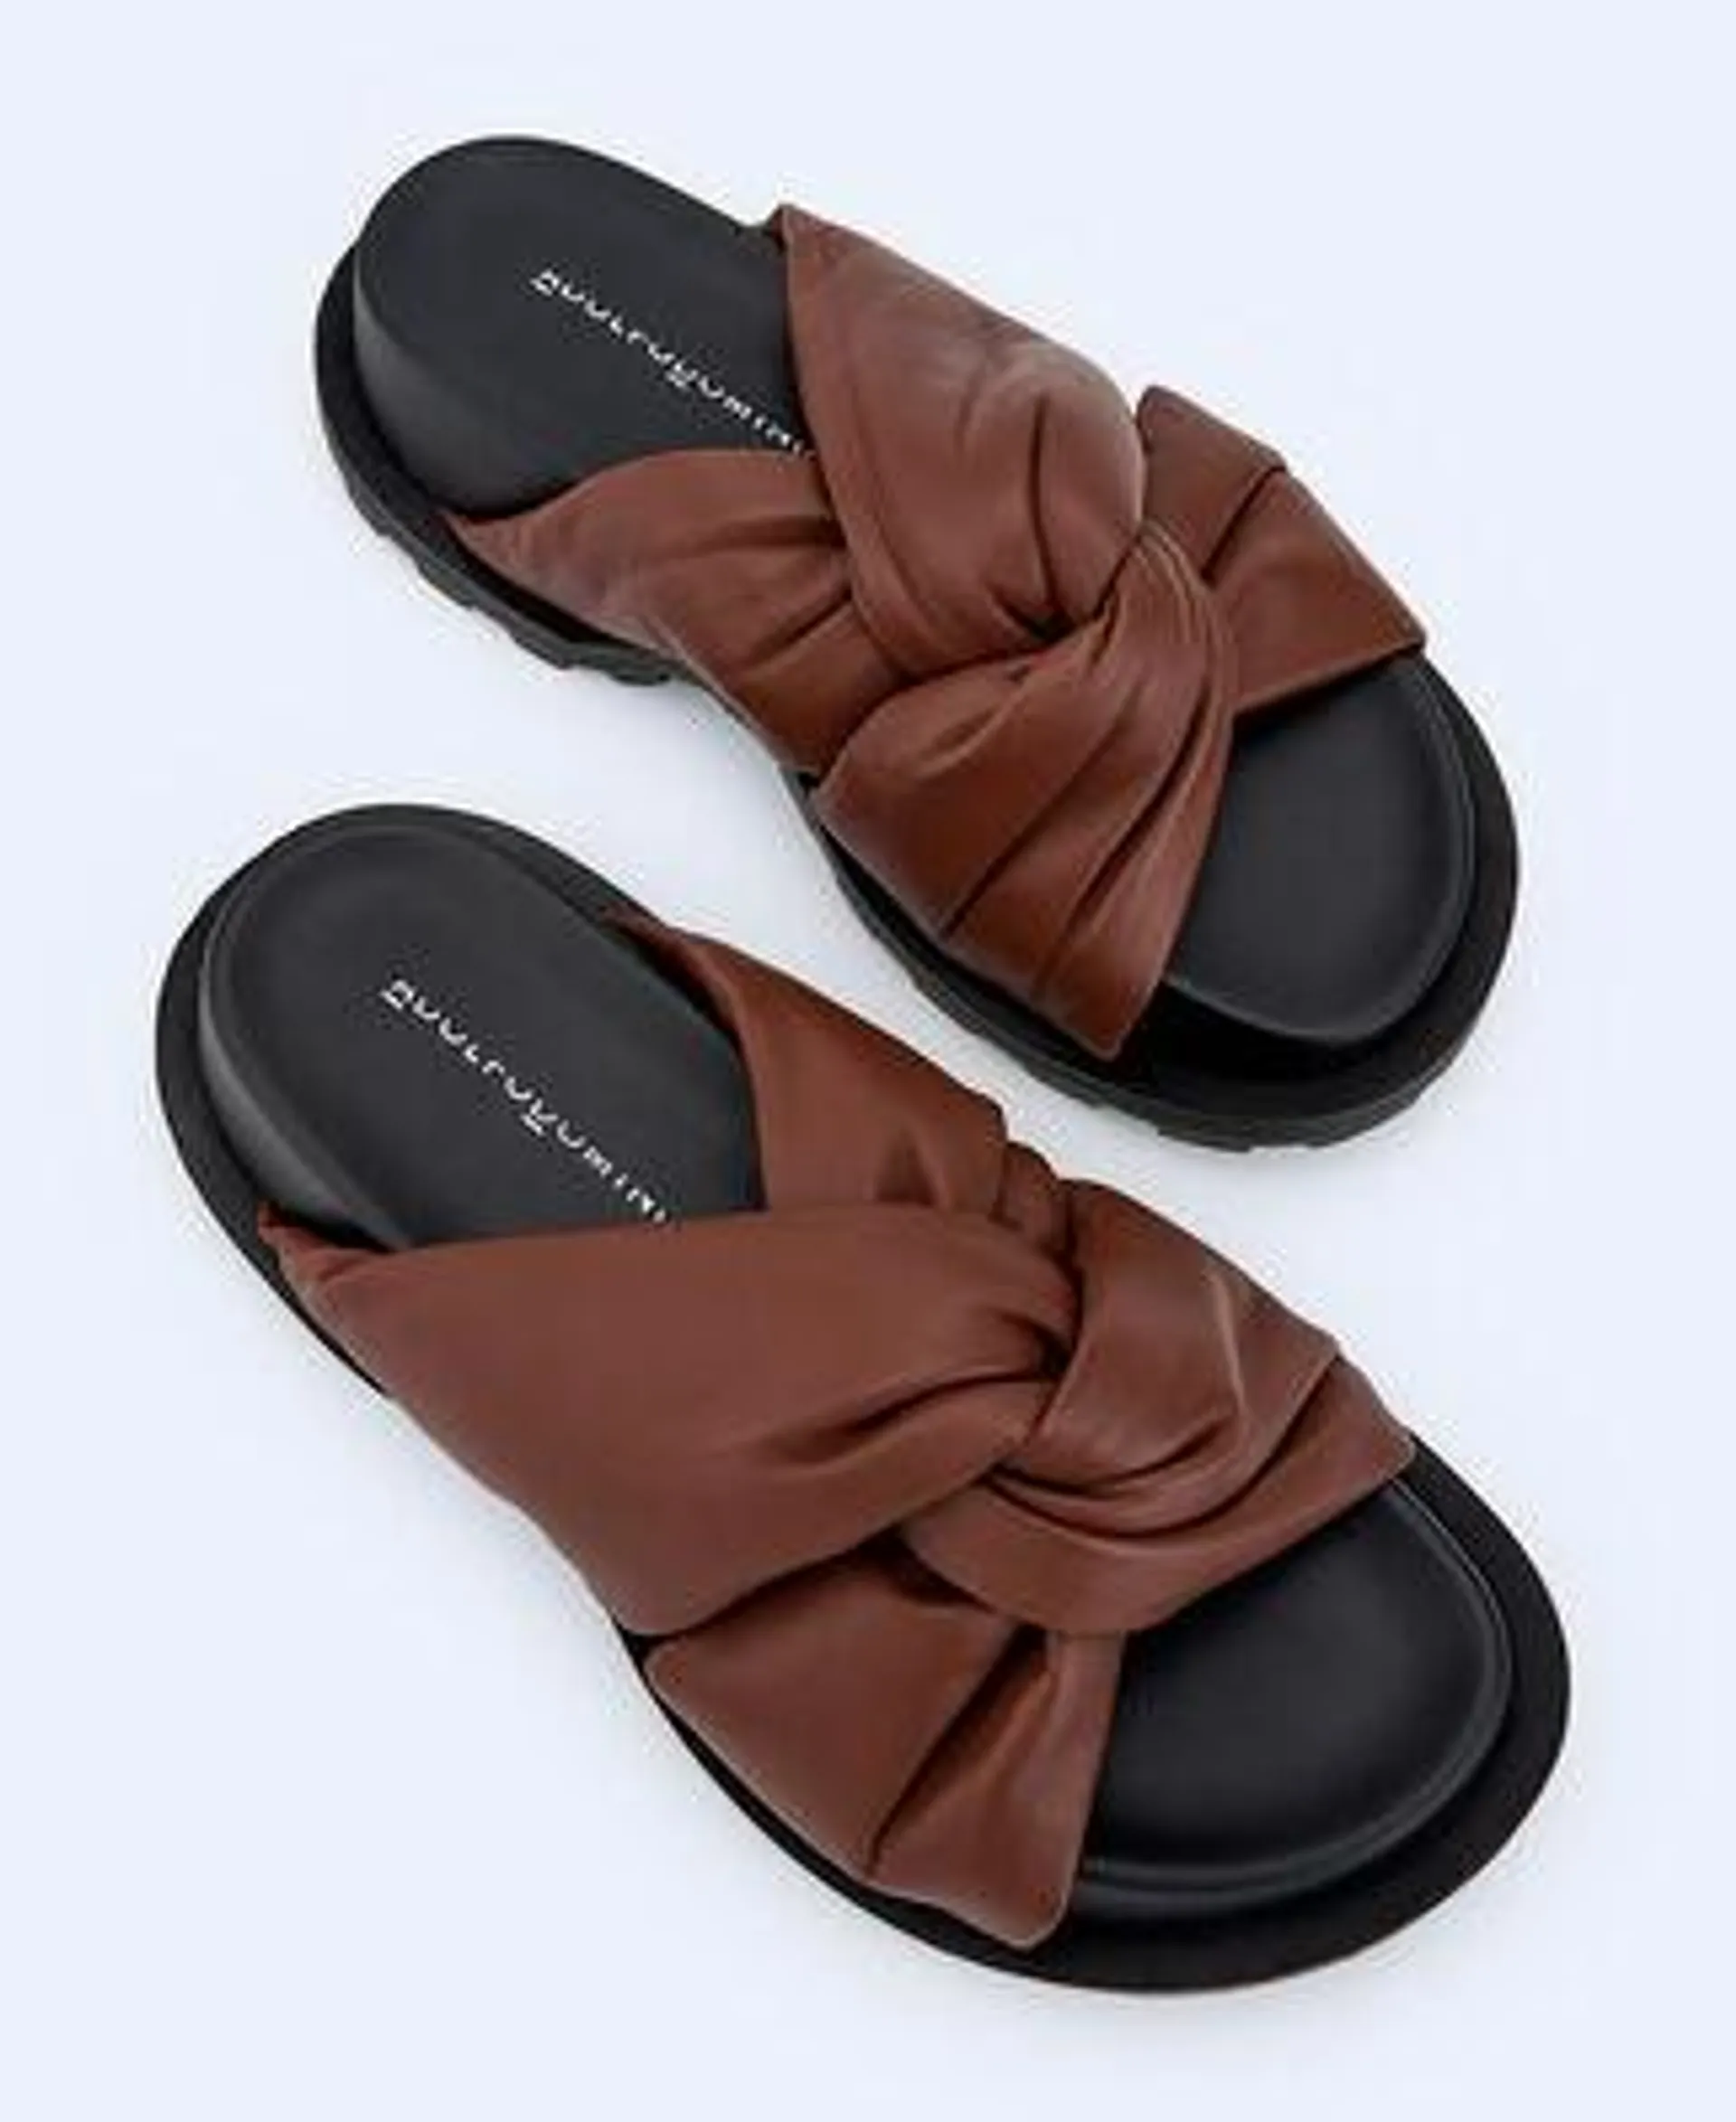 Rubber sole platform sandals